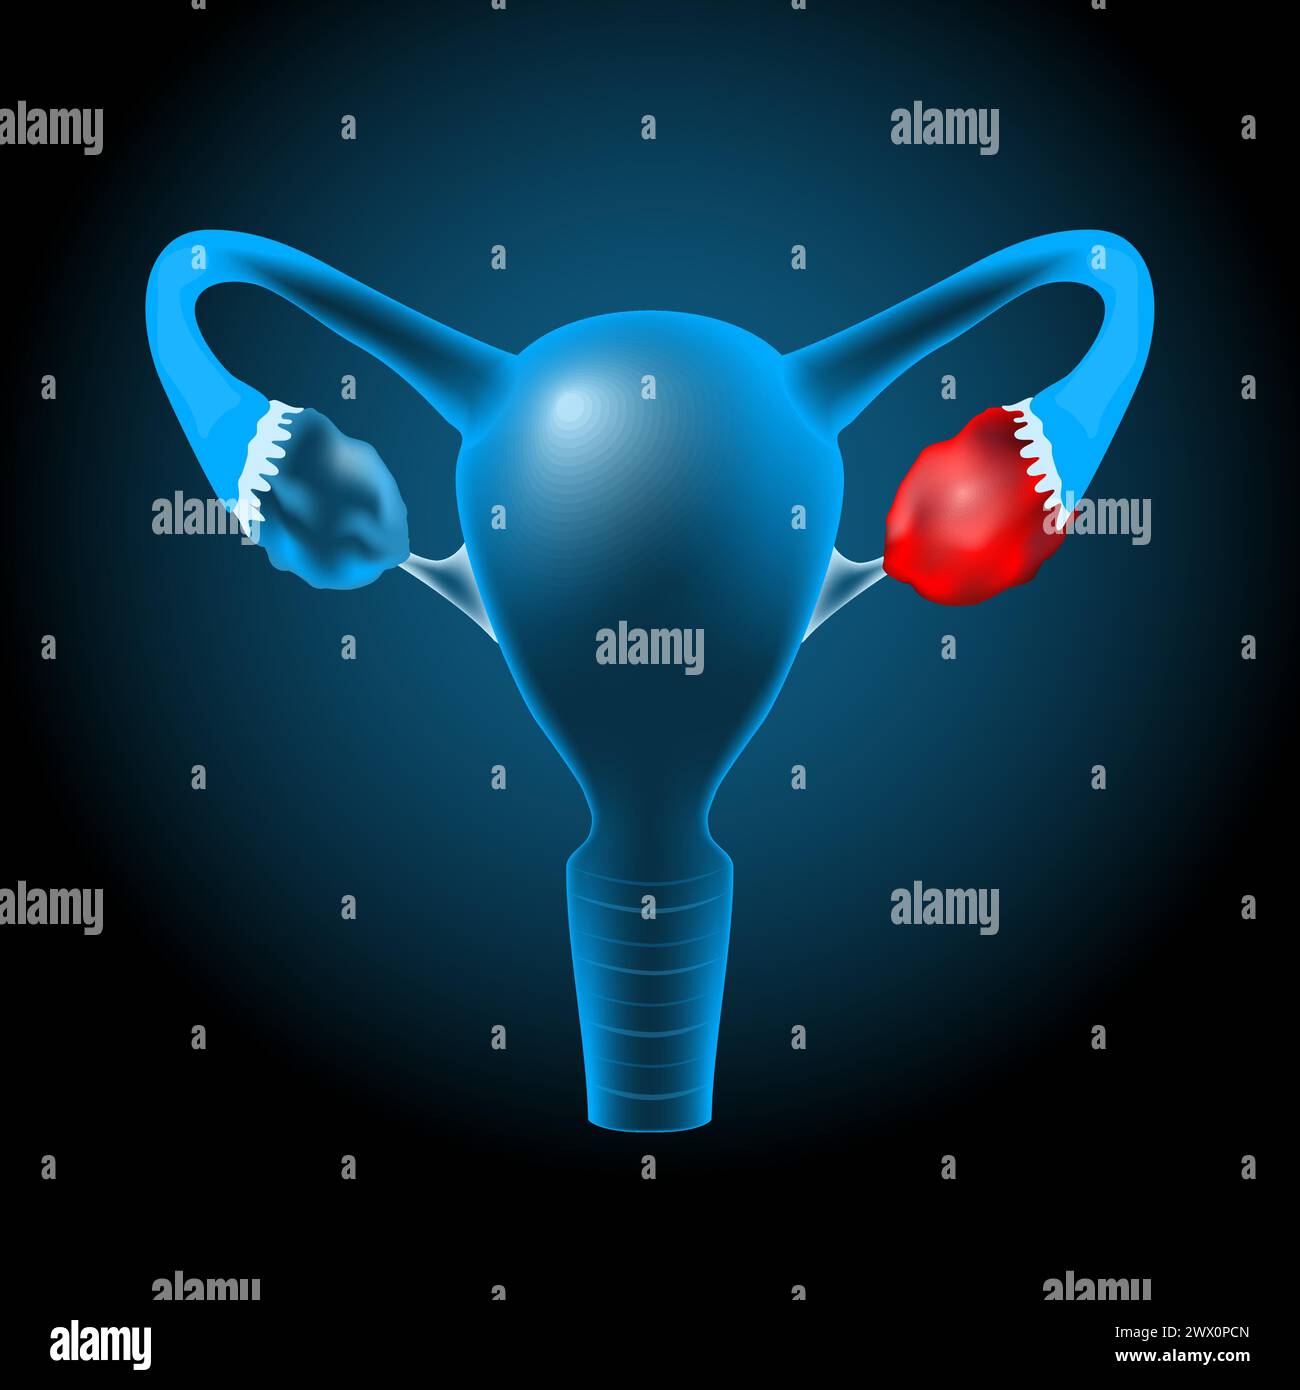 Utero umano blu trasparente realistico con effetto luminoso su sfondo scuro. Cisti ovarica o tumore che si verifica nell'ovaio. Illustrazione vettoriale li Illustrazione Vettoriale